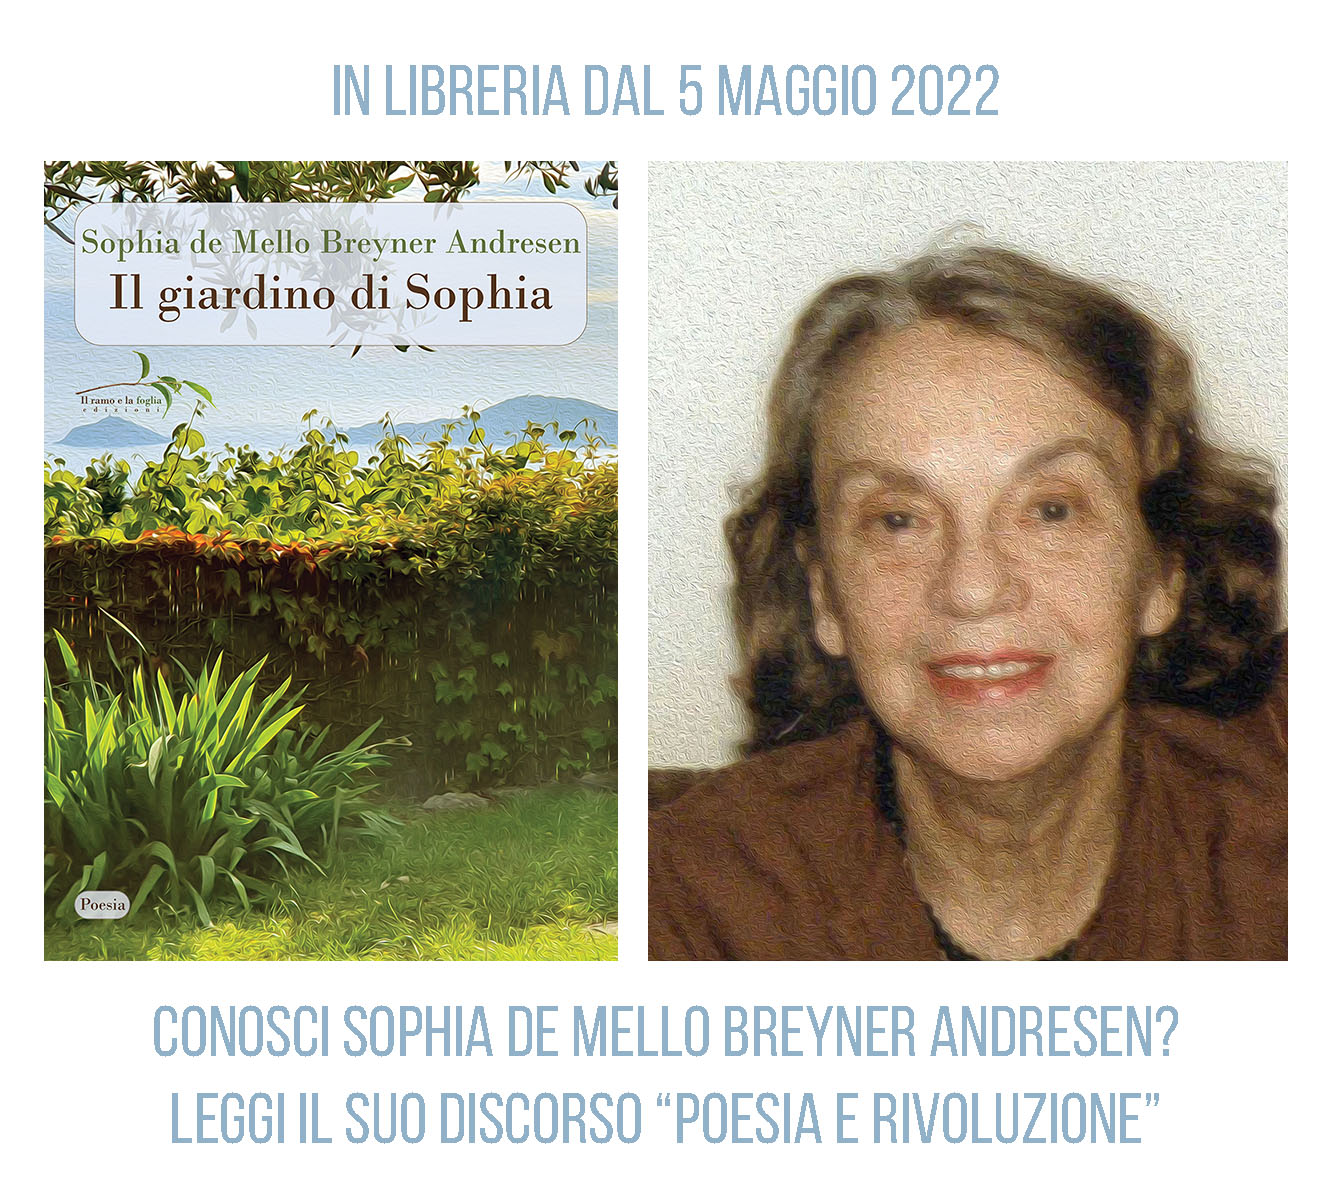 Sophia de Mello Breyner Andresen - anni ’80 (per gentile concessione degli eredi; elaborazione grafica: effetto dipinto a olio, a cura dell’editore)